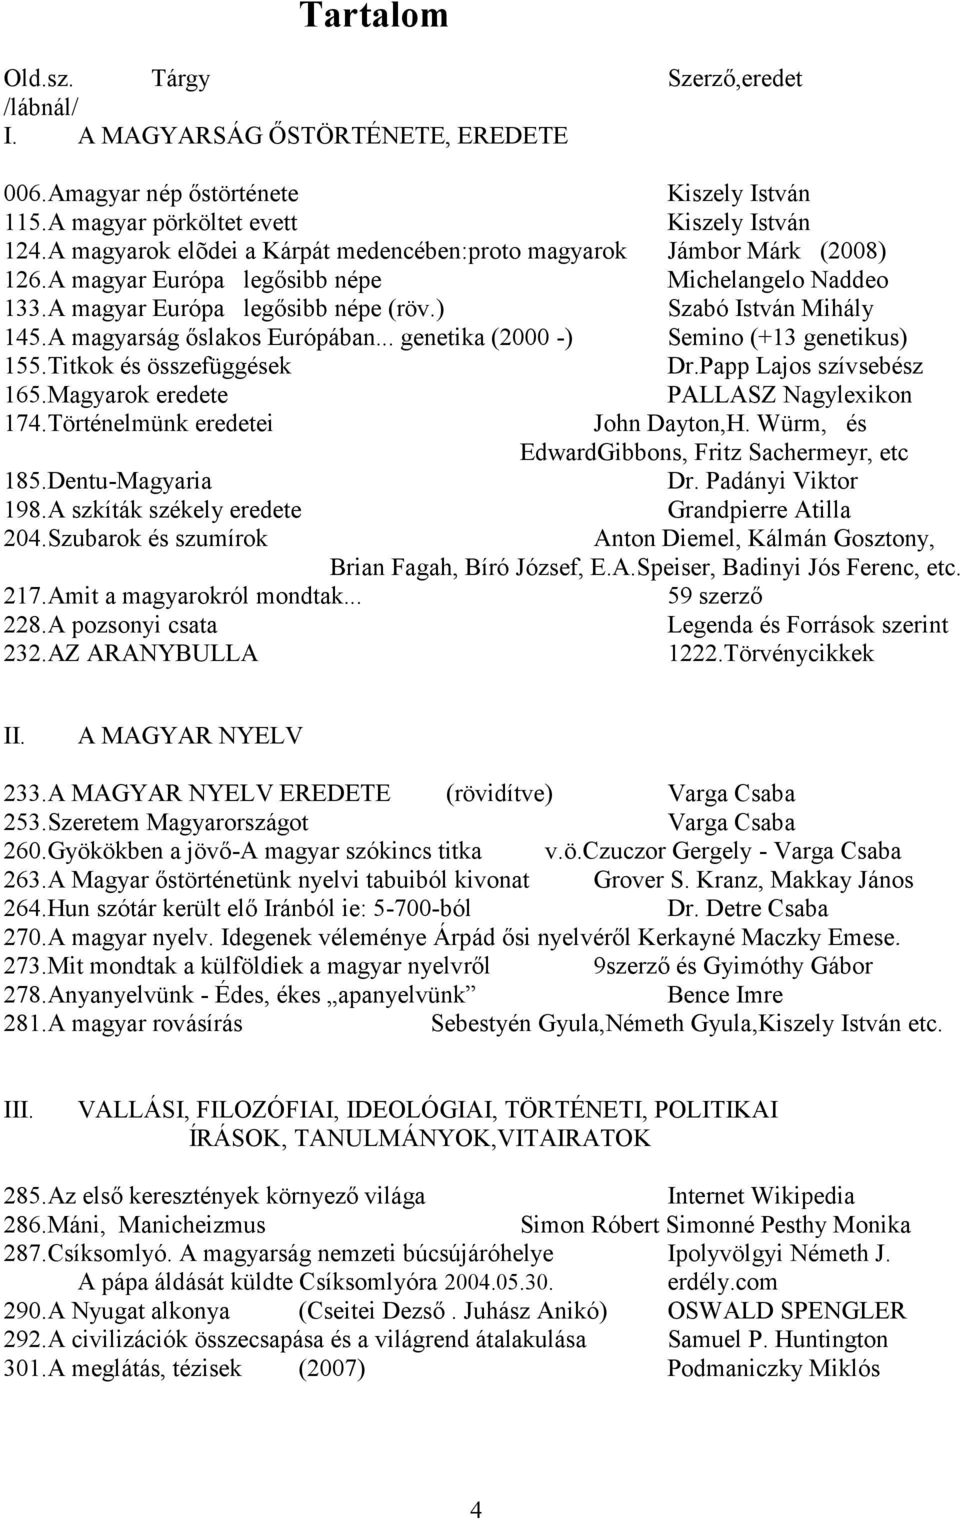 A magyarság őslakos Európában... genetika (2000 -) Semino (+13 genetikus) 155.Titkok és összefüggések Dr.Papp Lajos szívsebész 165.Magyarok eredete PALLASZ Nagylexikon 174.